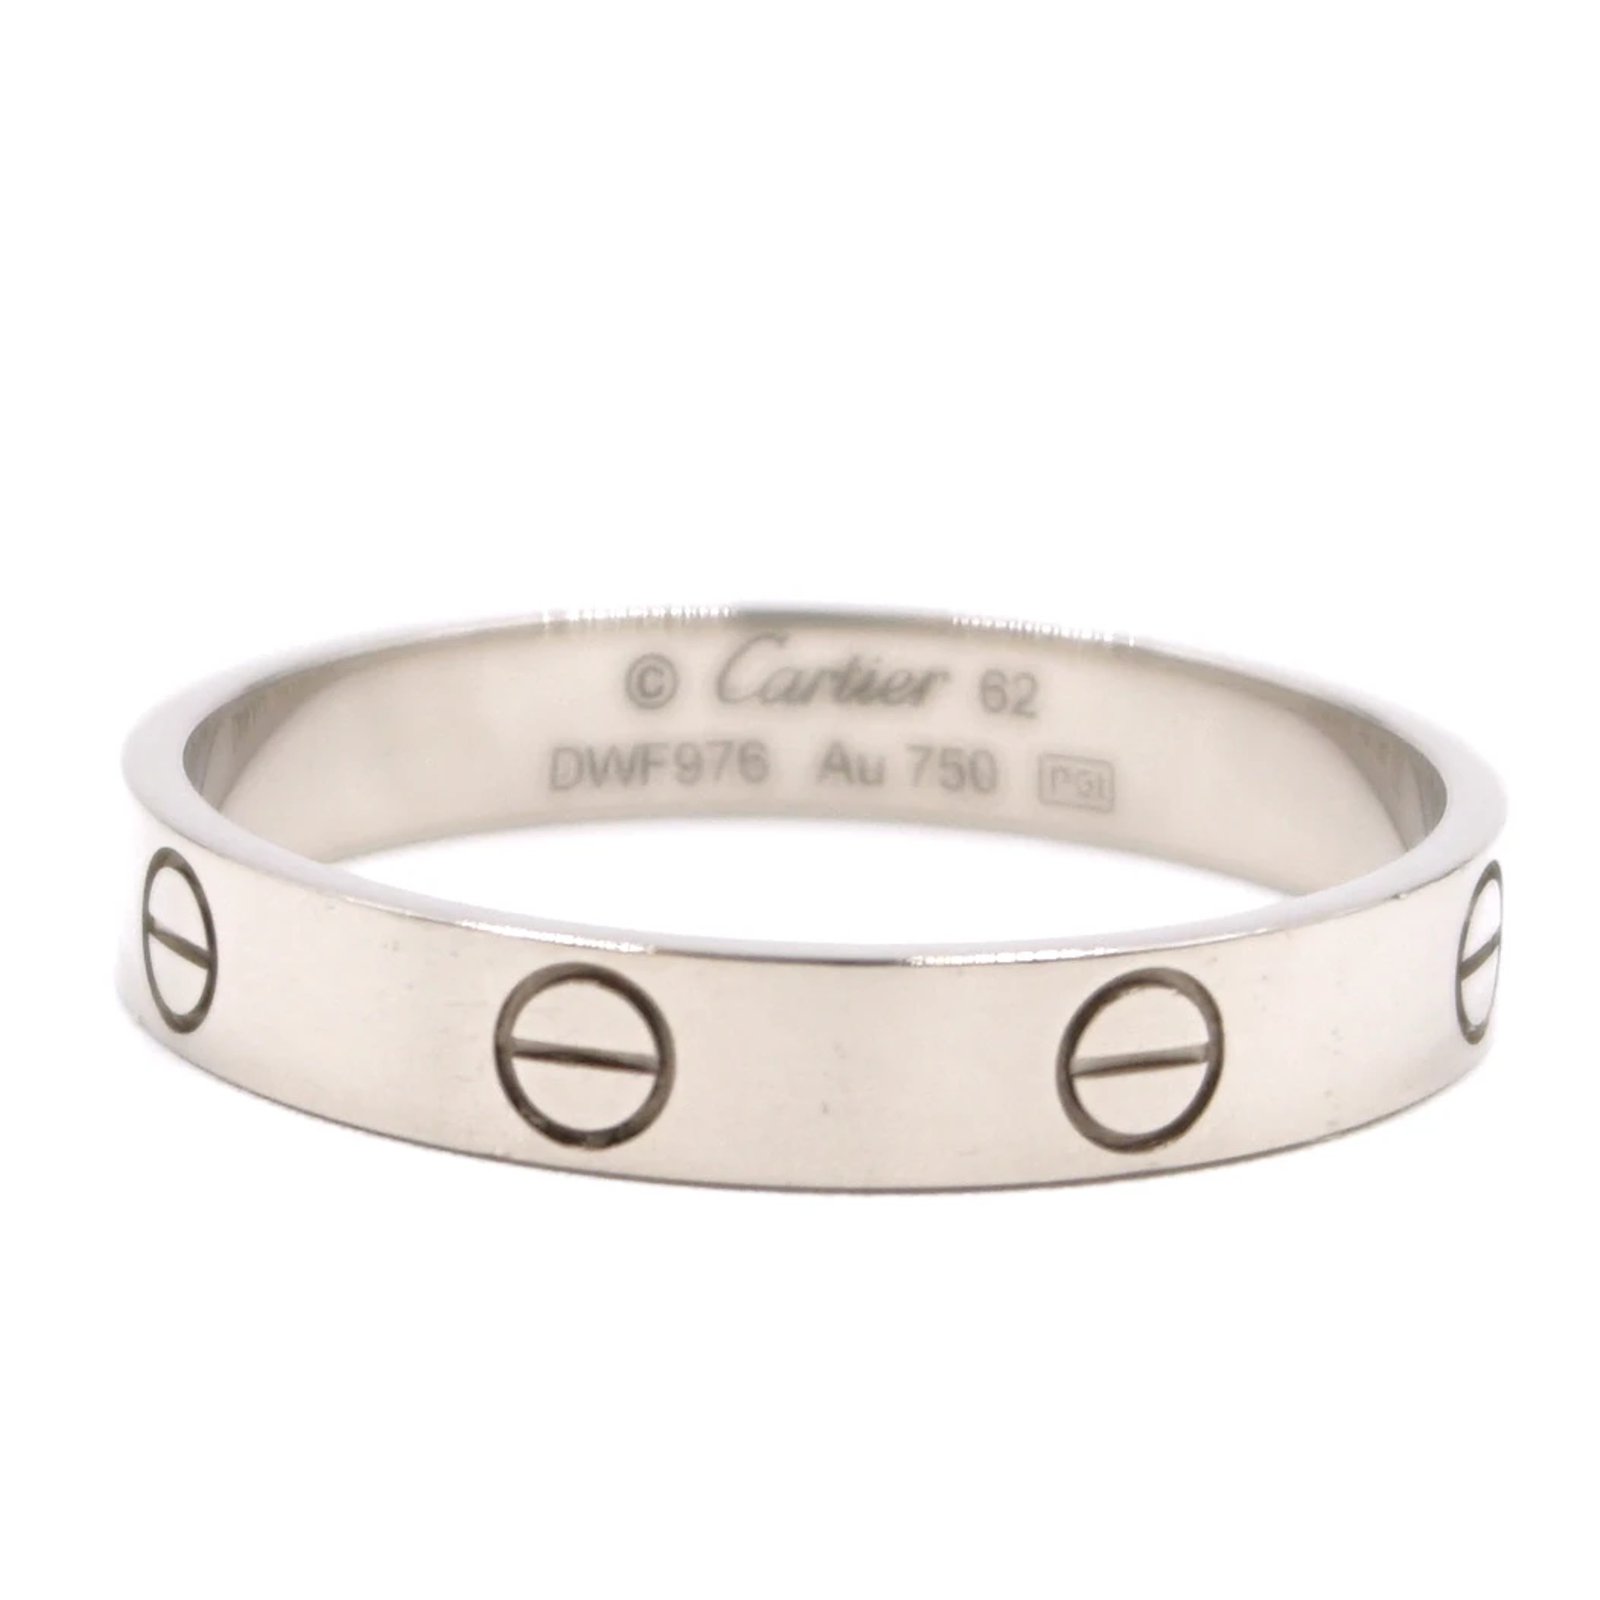 Cartier cartier 18K 750 Love Band Ring 